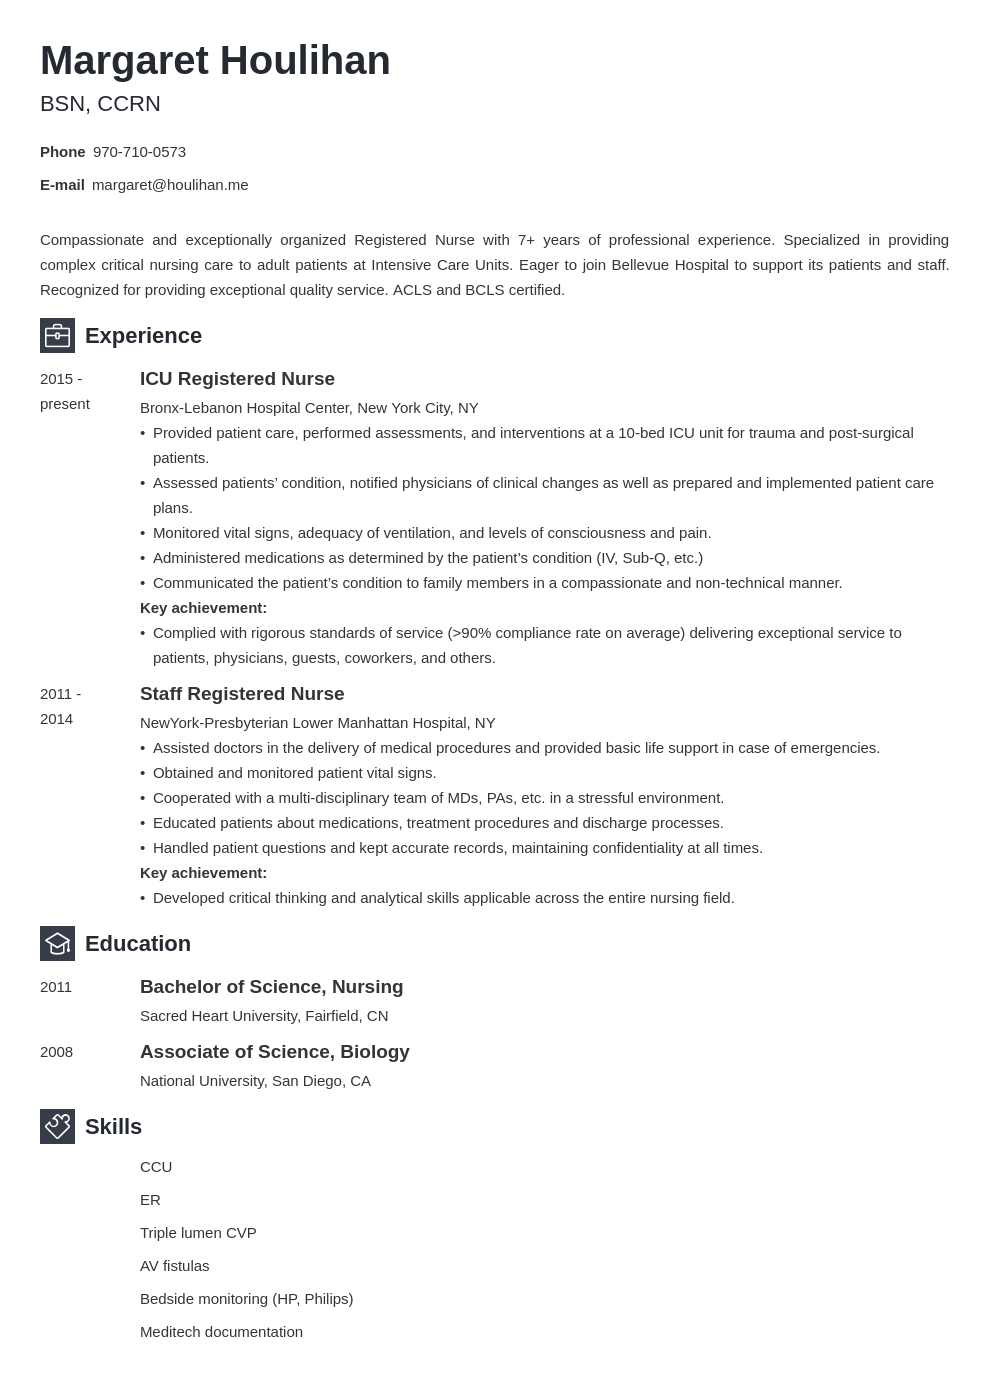 Resume Format For Nursing Job from cdn-images.zety.com